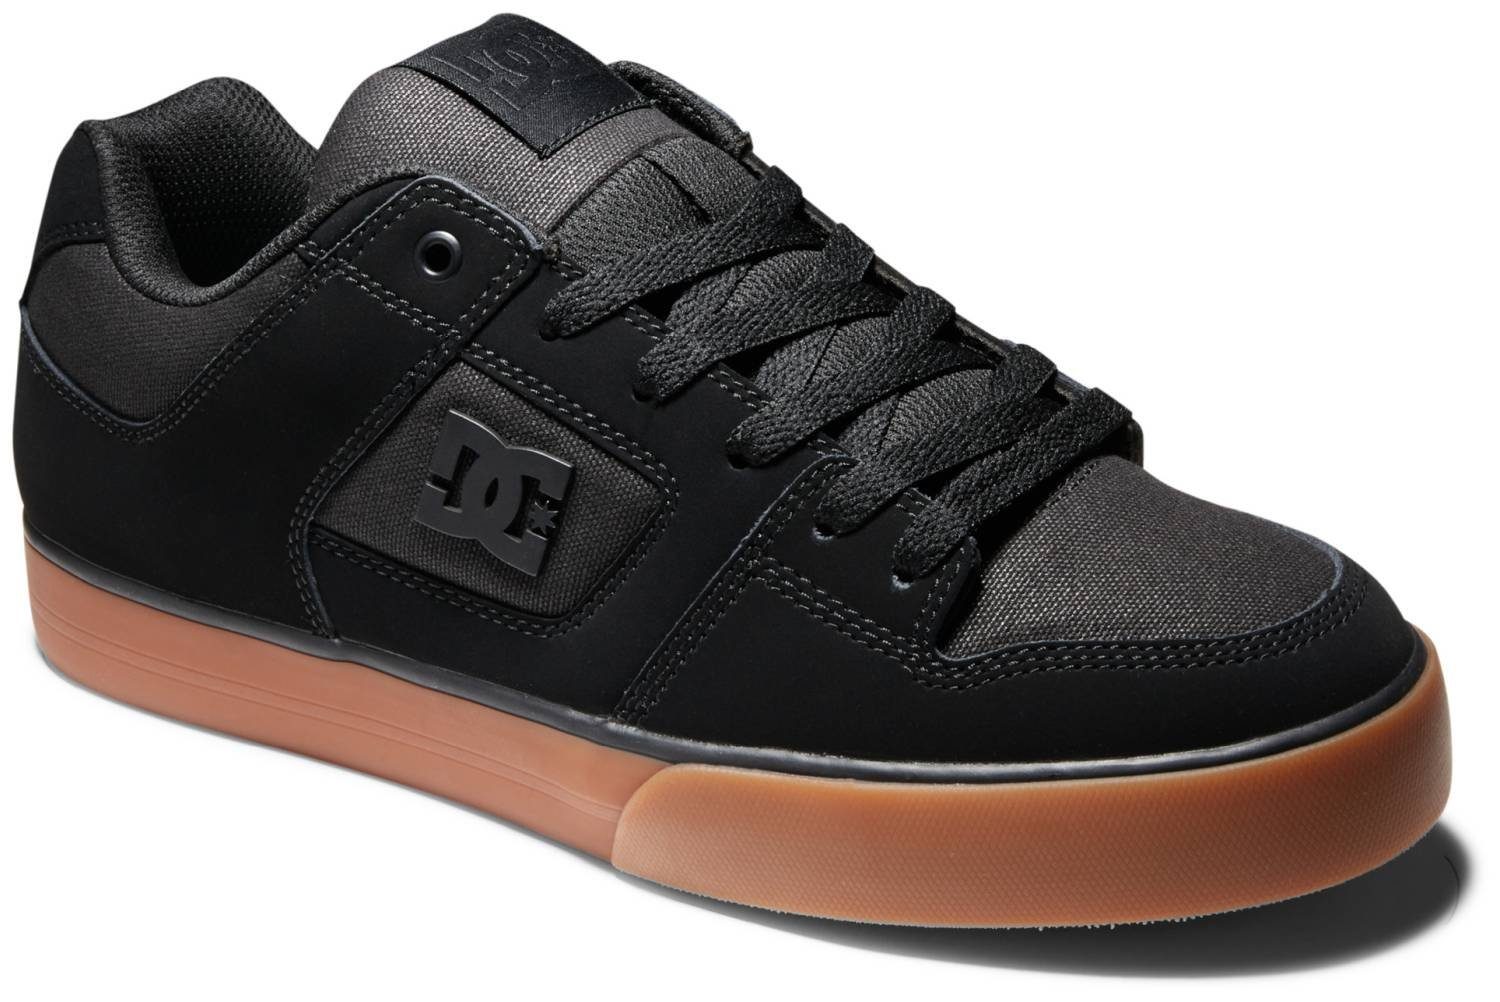 Sneaker Black/Gum Shoes Shoes DC DC Pure